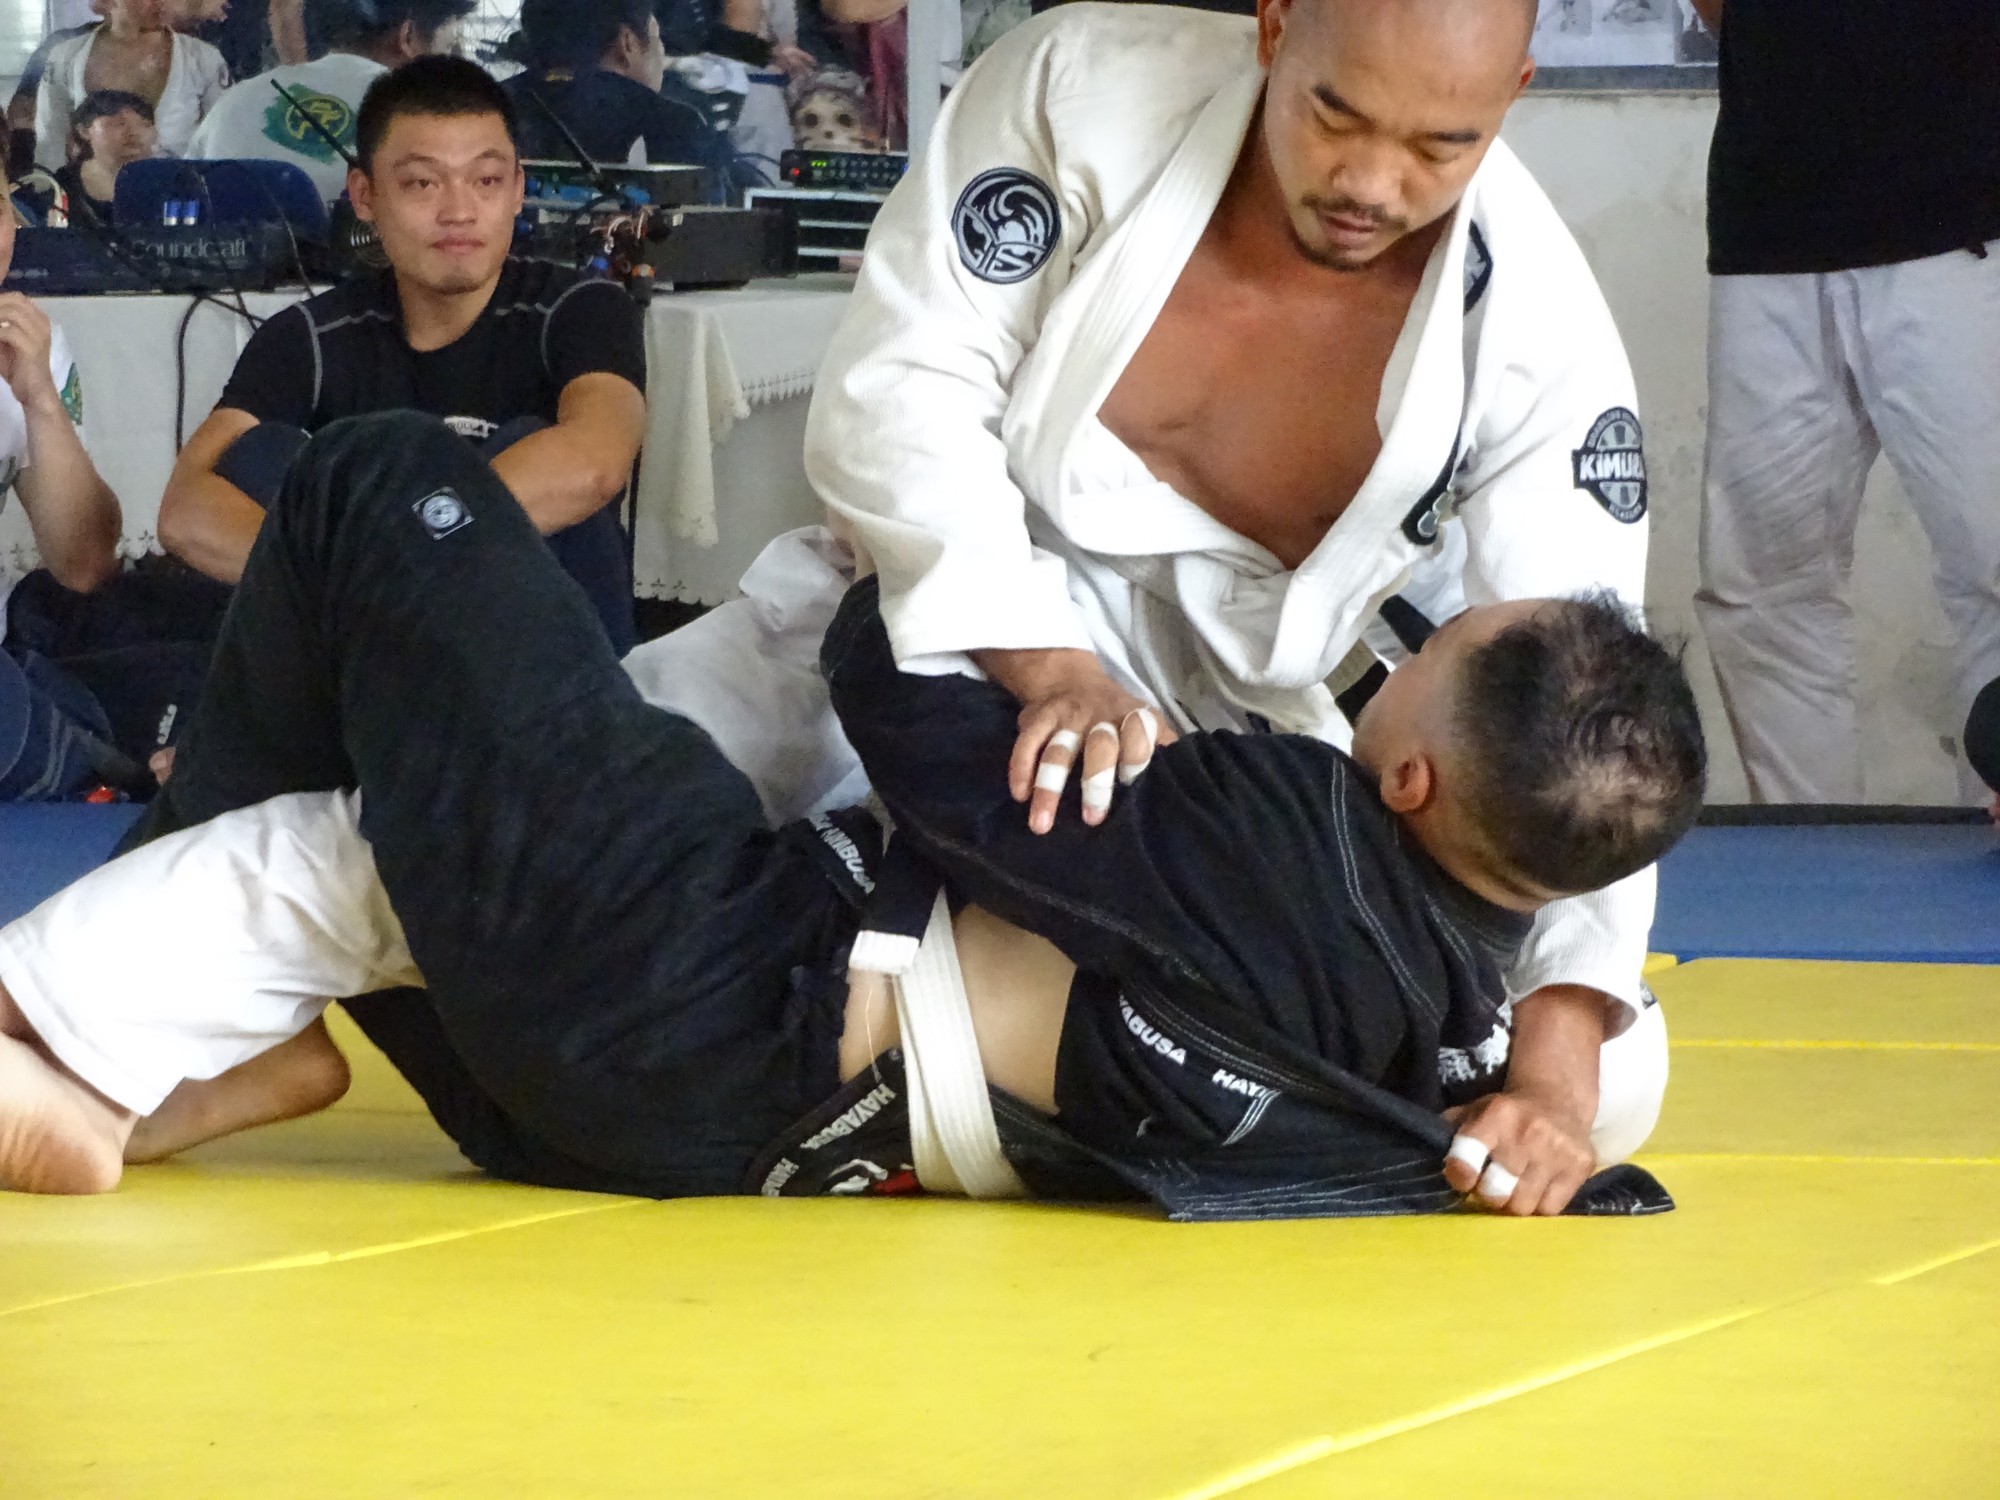 Khoảng cách giữa Phong trào và Đội tuyển gần khó tin ở giải Jiu-jitsu Hà Nội mở rộng - Ảnh 1.